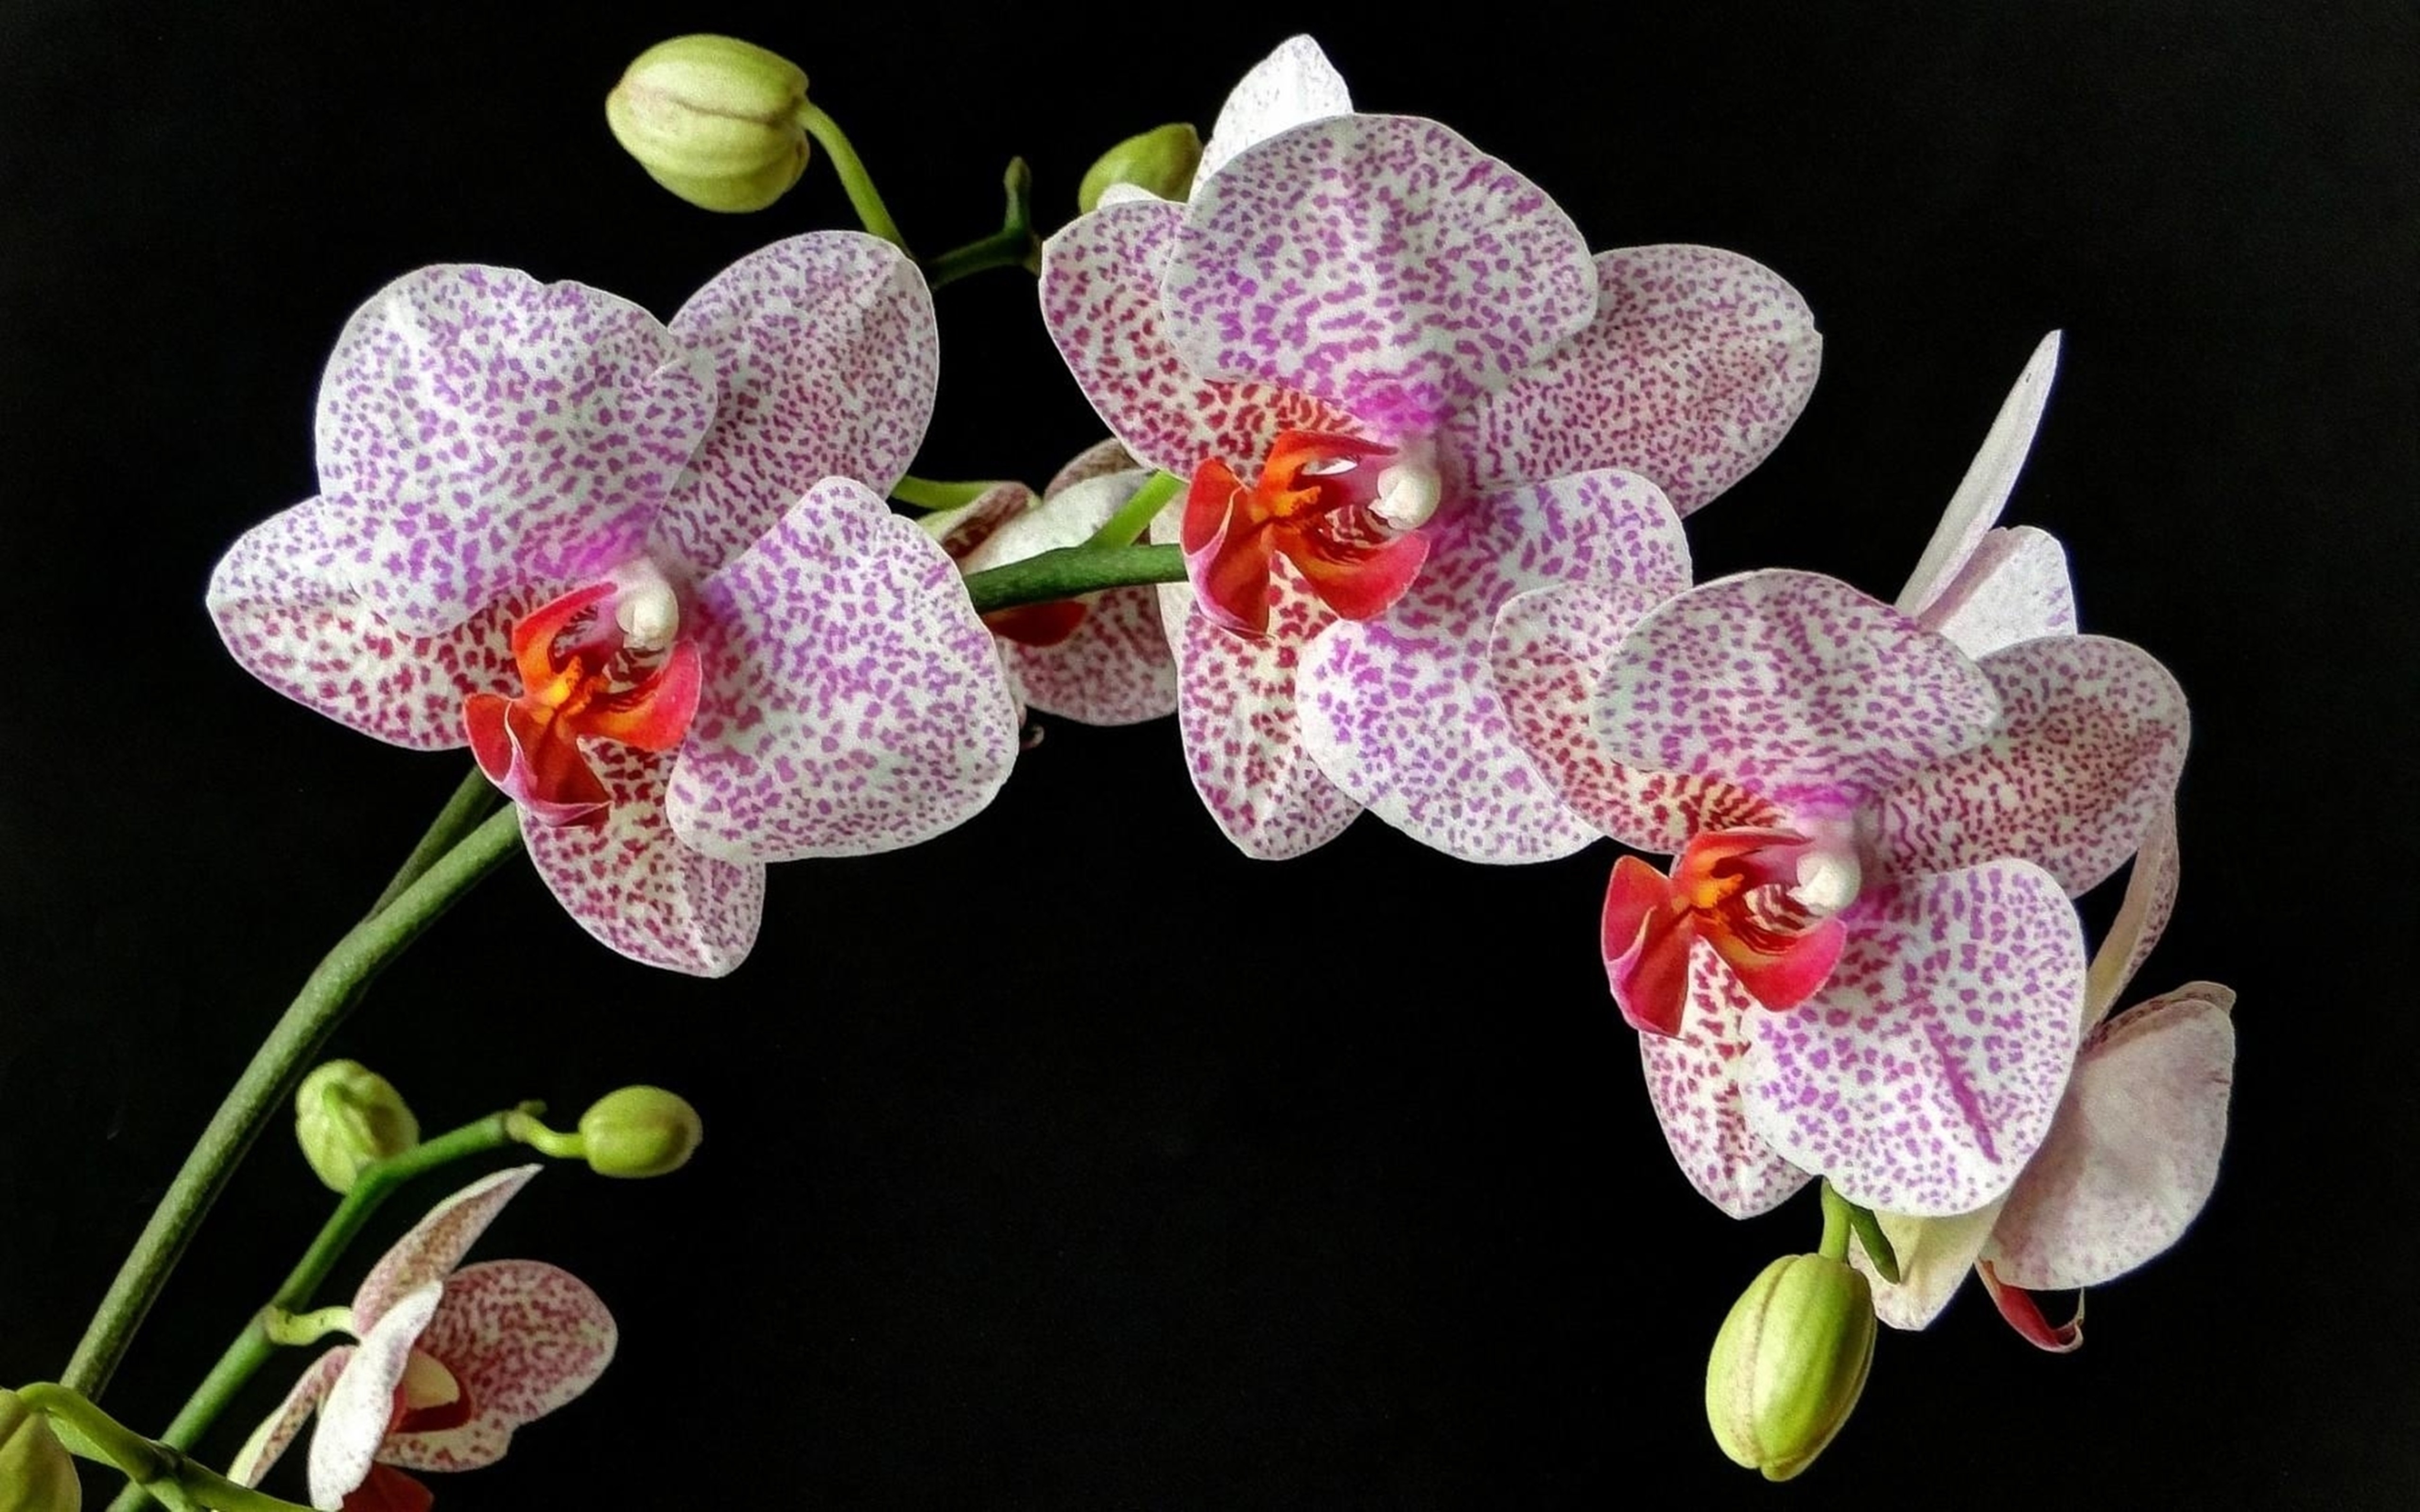 Удобрения для орхидей 49 фото чем подкормить орхидею в домашних условиях чтобы она цвела и давала деток Как правильно подкармливать